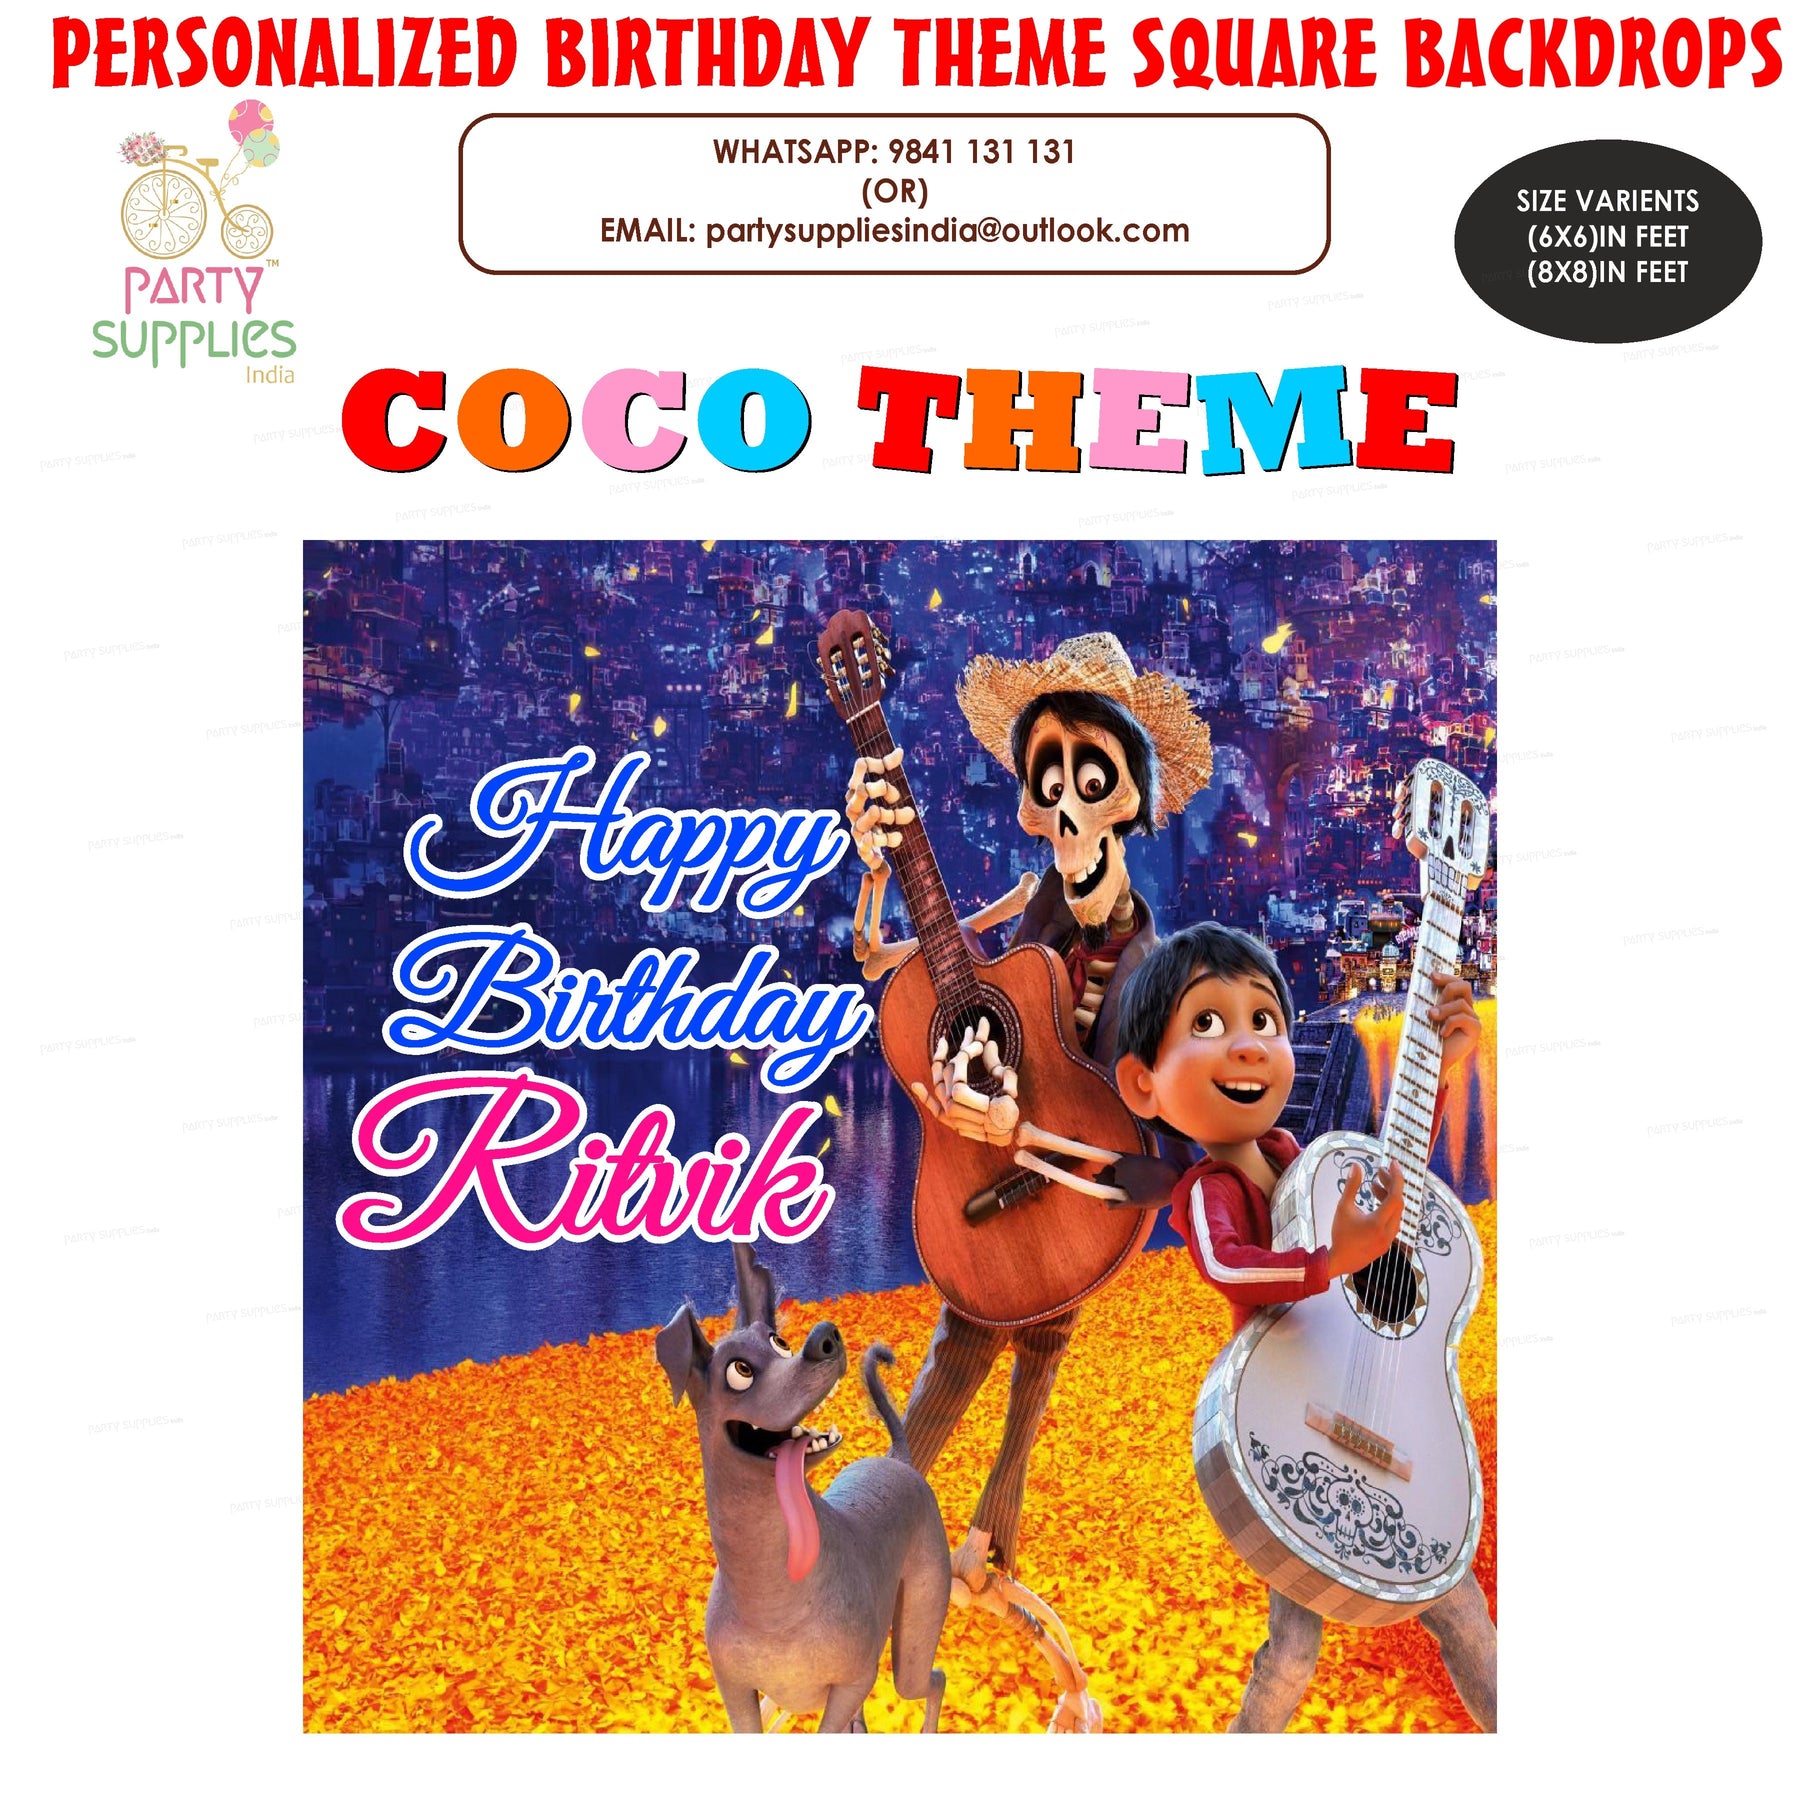 PSI Coco Theme Personalized Square Backdrop